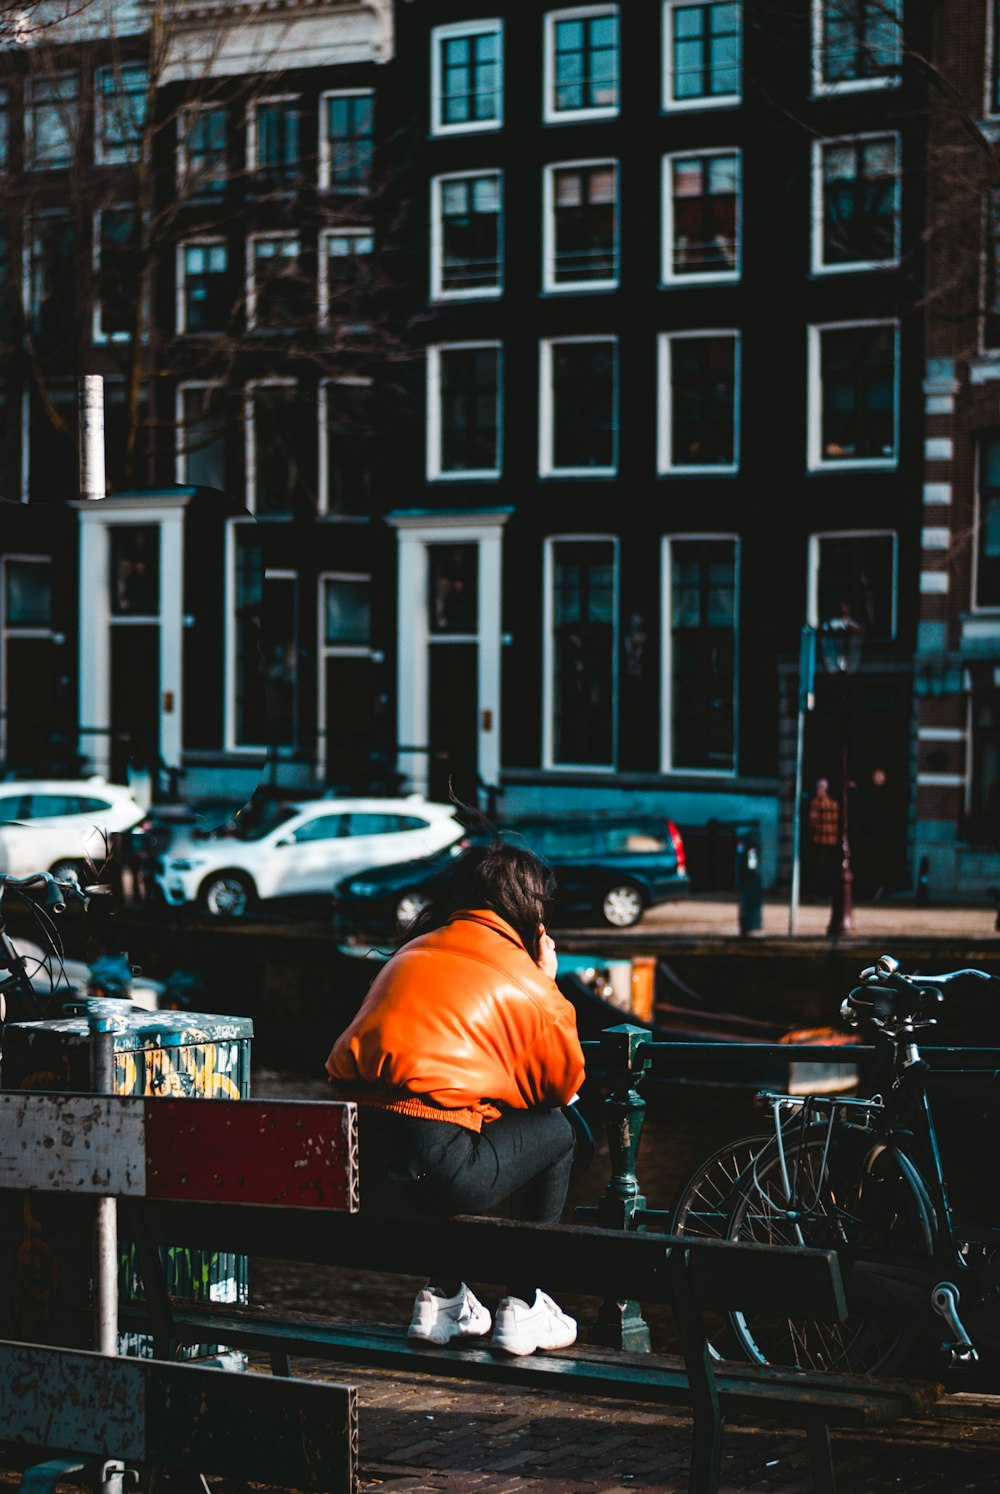 Mann im orangefarbenen Hemd sitzt tagsüber auf der Bank vor dem geparkten Fahrrad